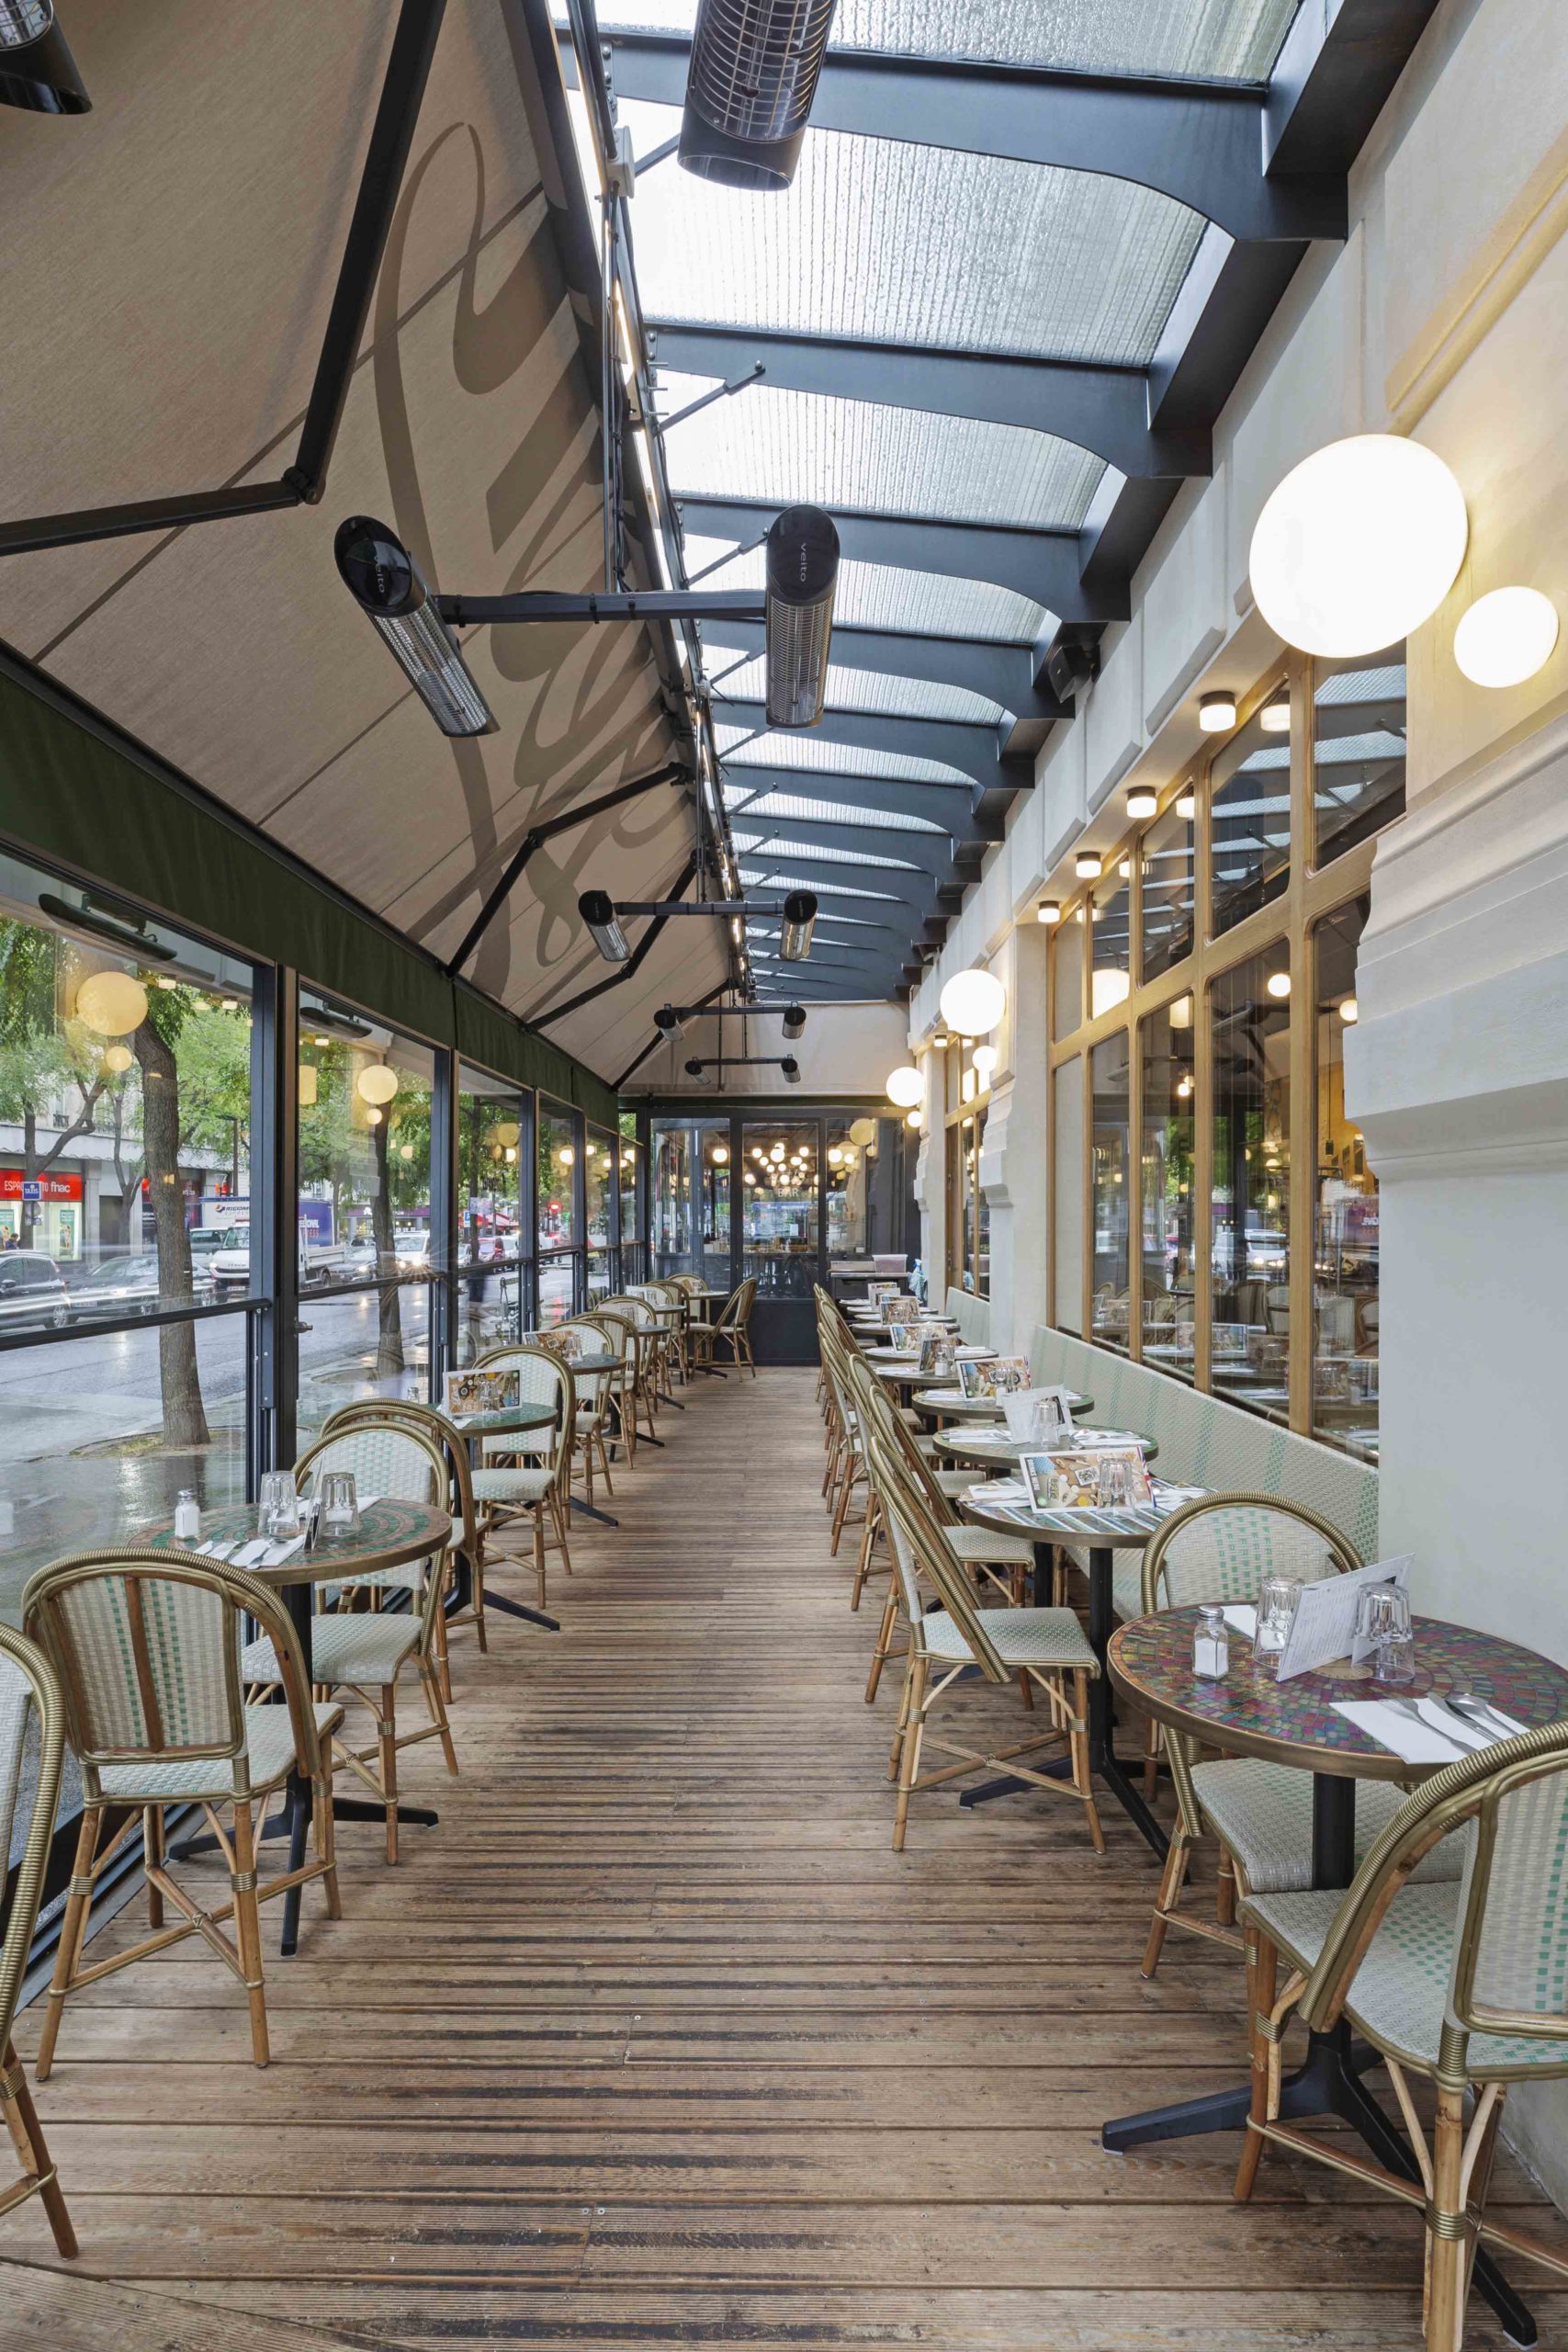 Restaurant avec terrasse ouverte avec paravents guillotines verticaux, plancher et store banne